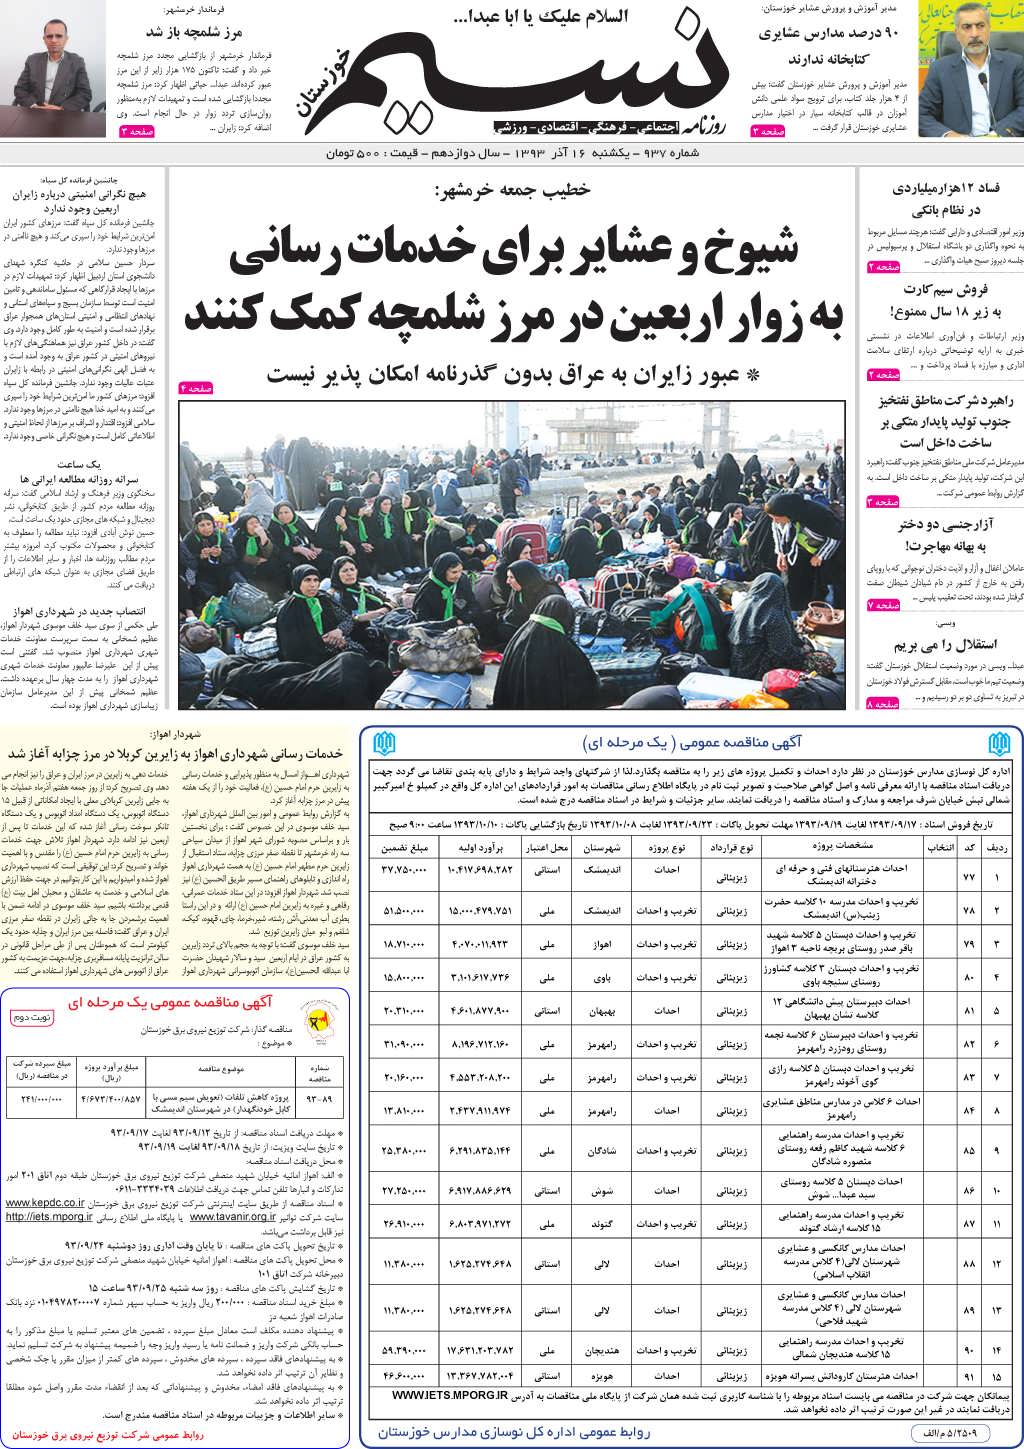 صفحه اصلی روزنامه نسیم شماره 937 